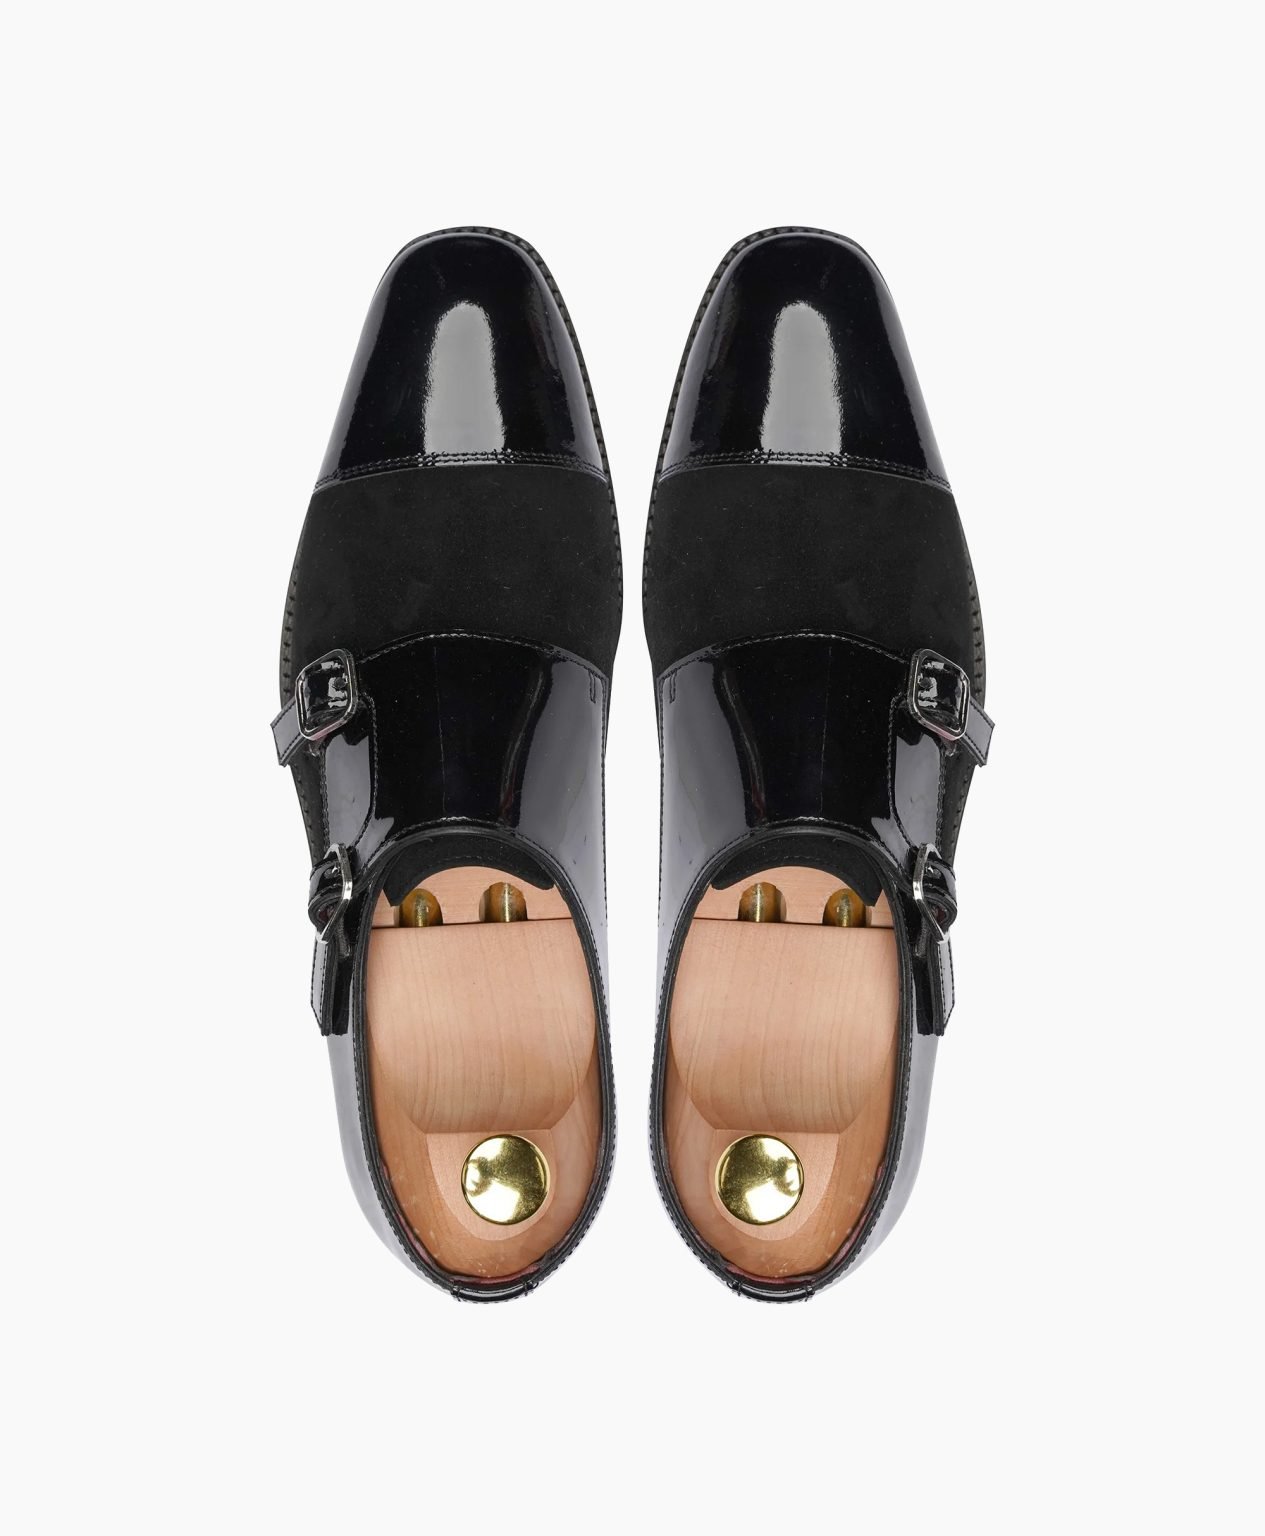 totnes-double-monkstrap-black-leather-shoes-image202